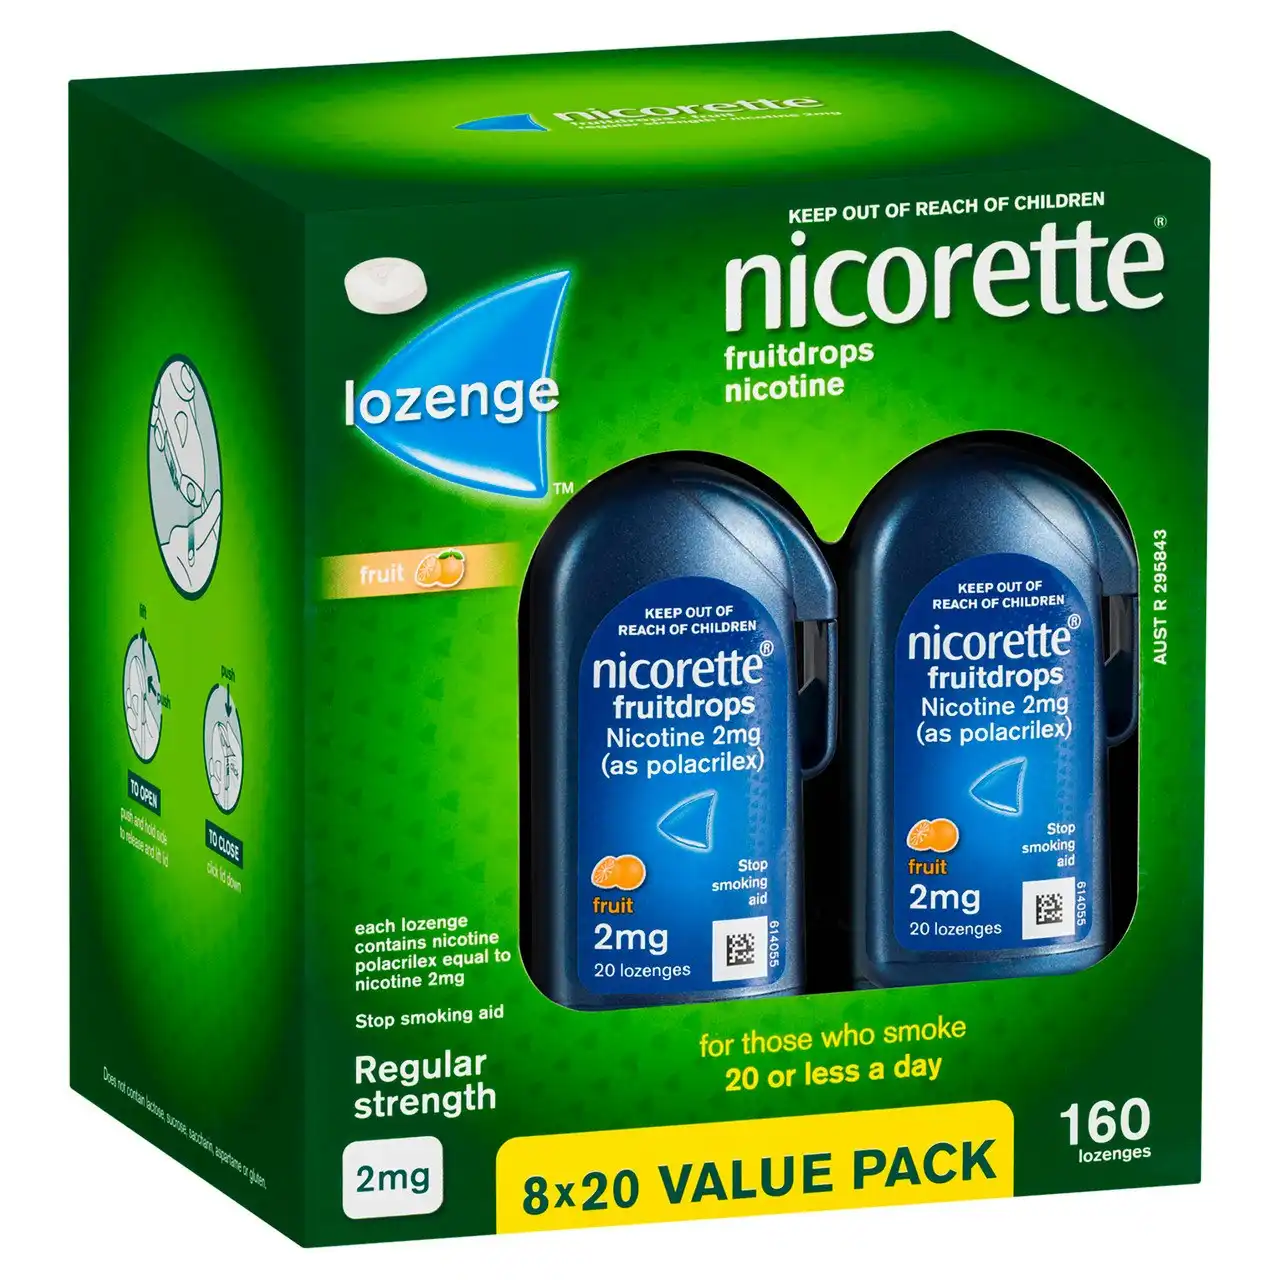 Nicorette Quit Smoking Regular Strength Nicotine Lozenge Fruitdrops  8 x 20 Pack